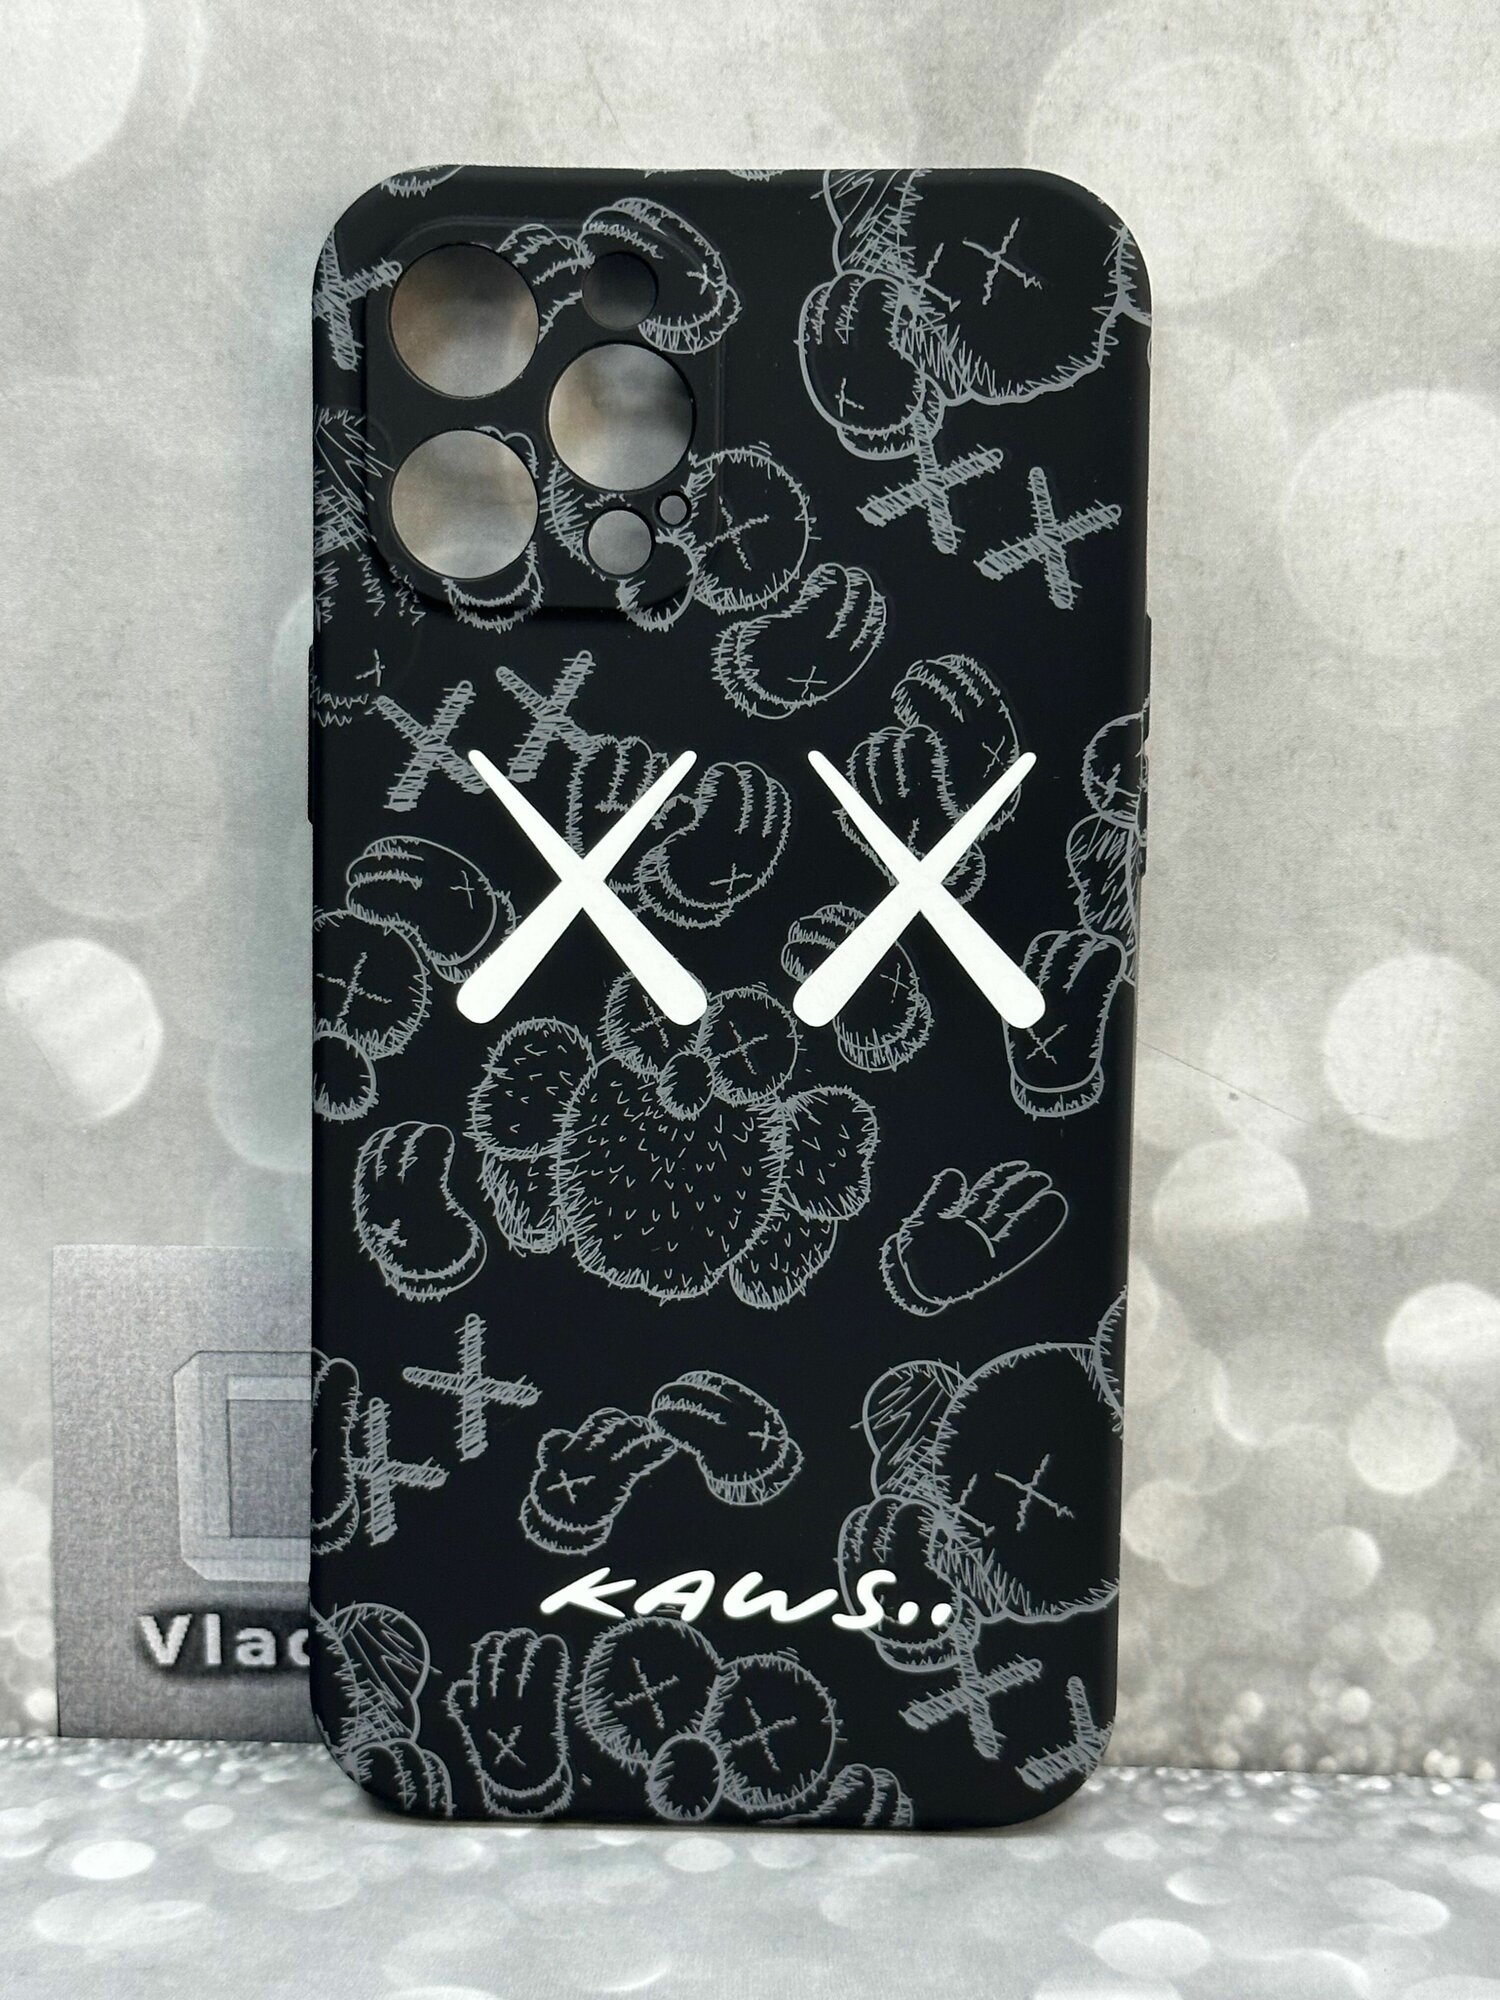 Светящийся чехол-накладка для Iphone 12 pro max Айфон 12 про макс LUXO.KAWS с флуоресцентным рисунком